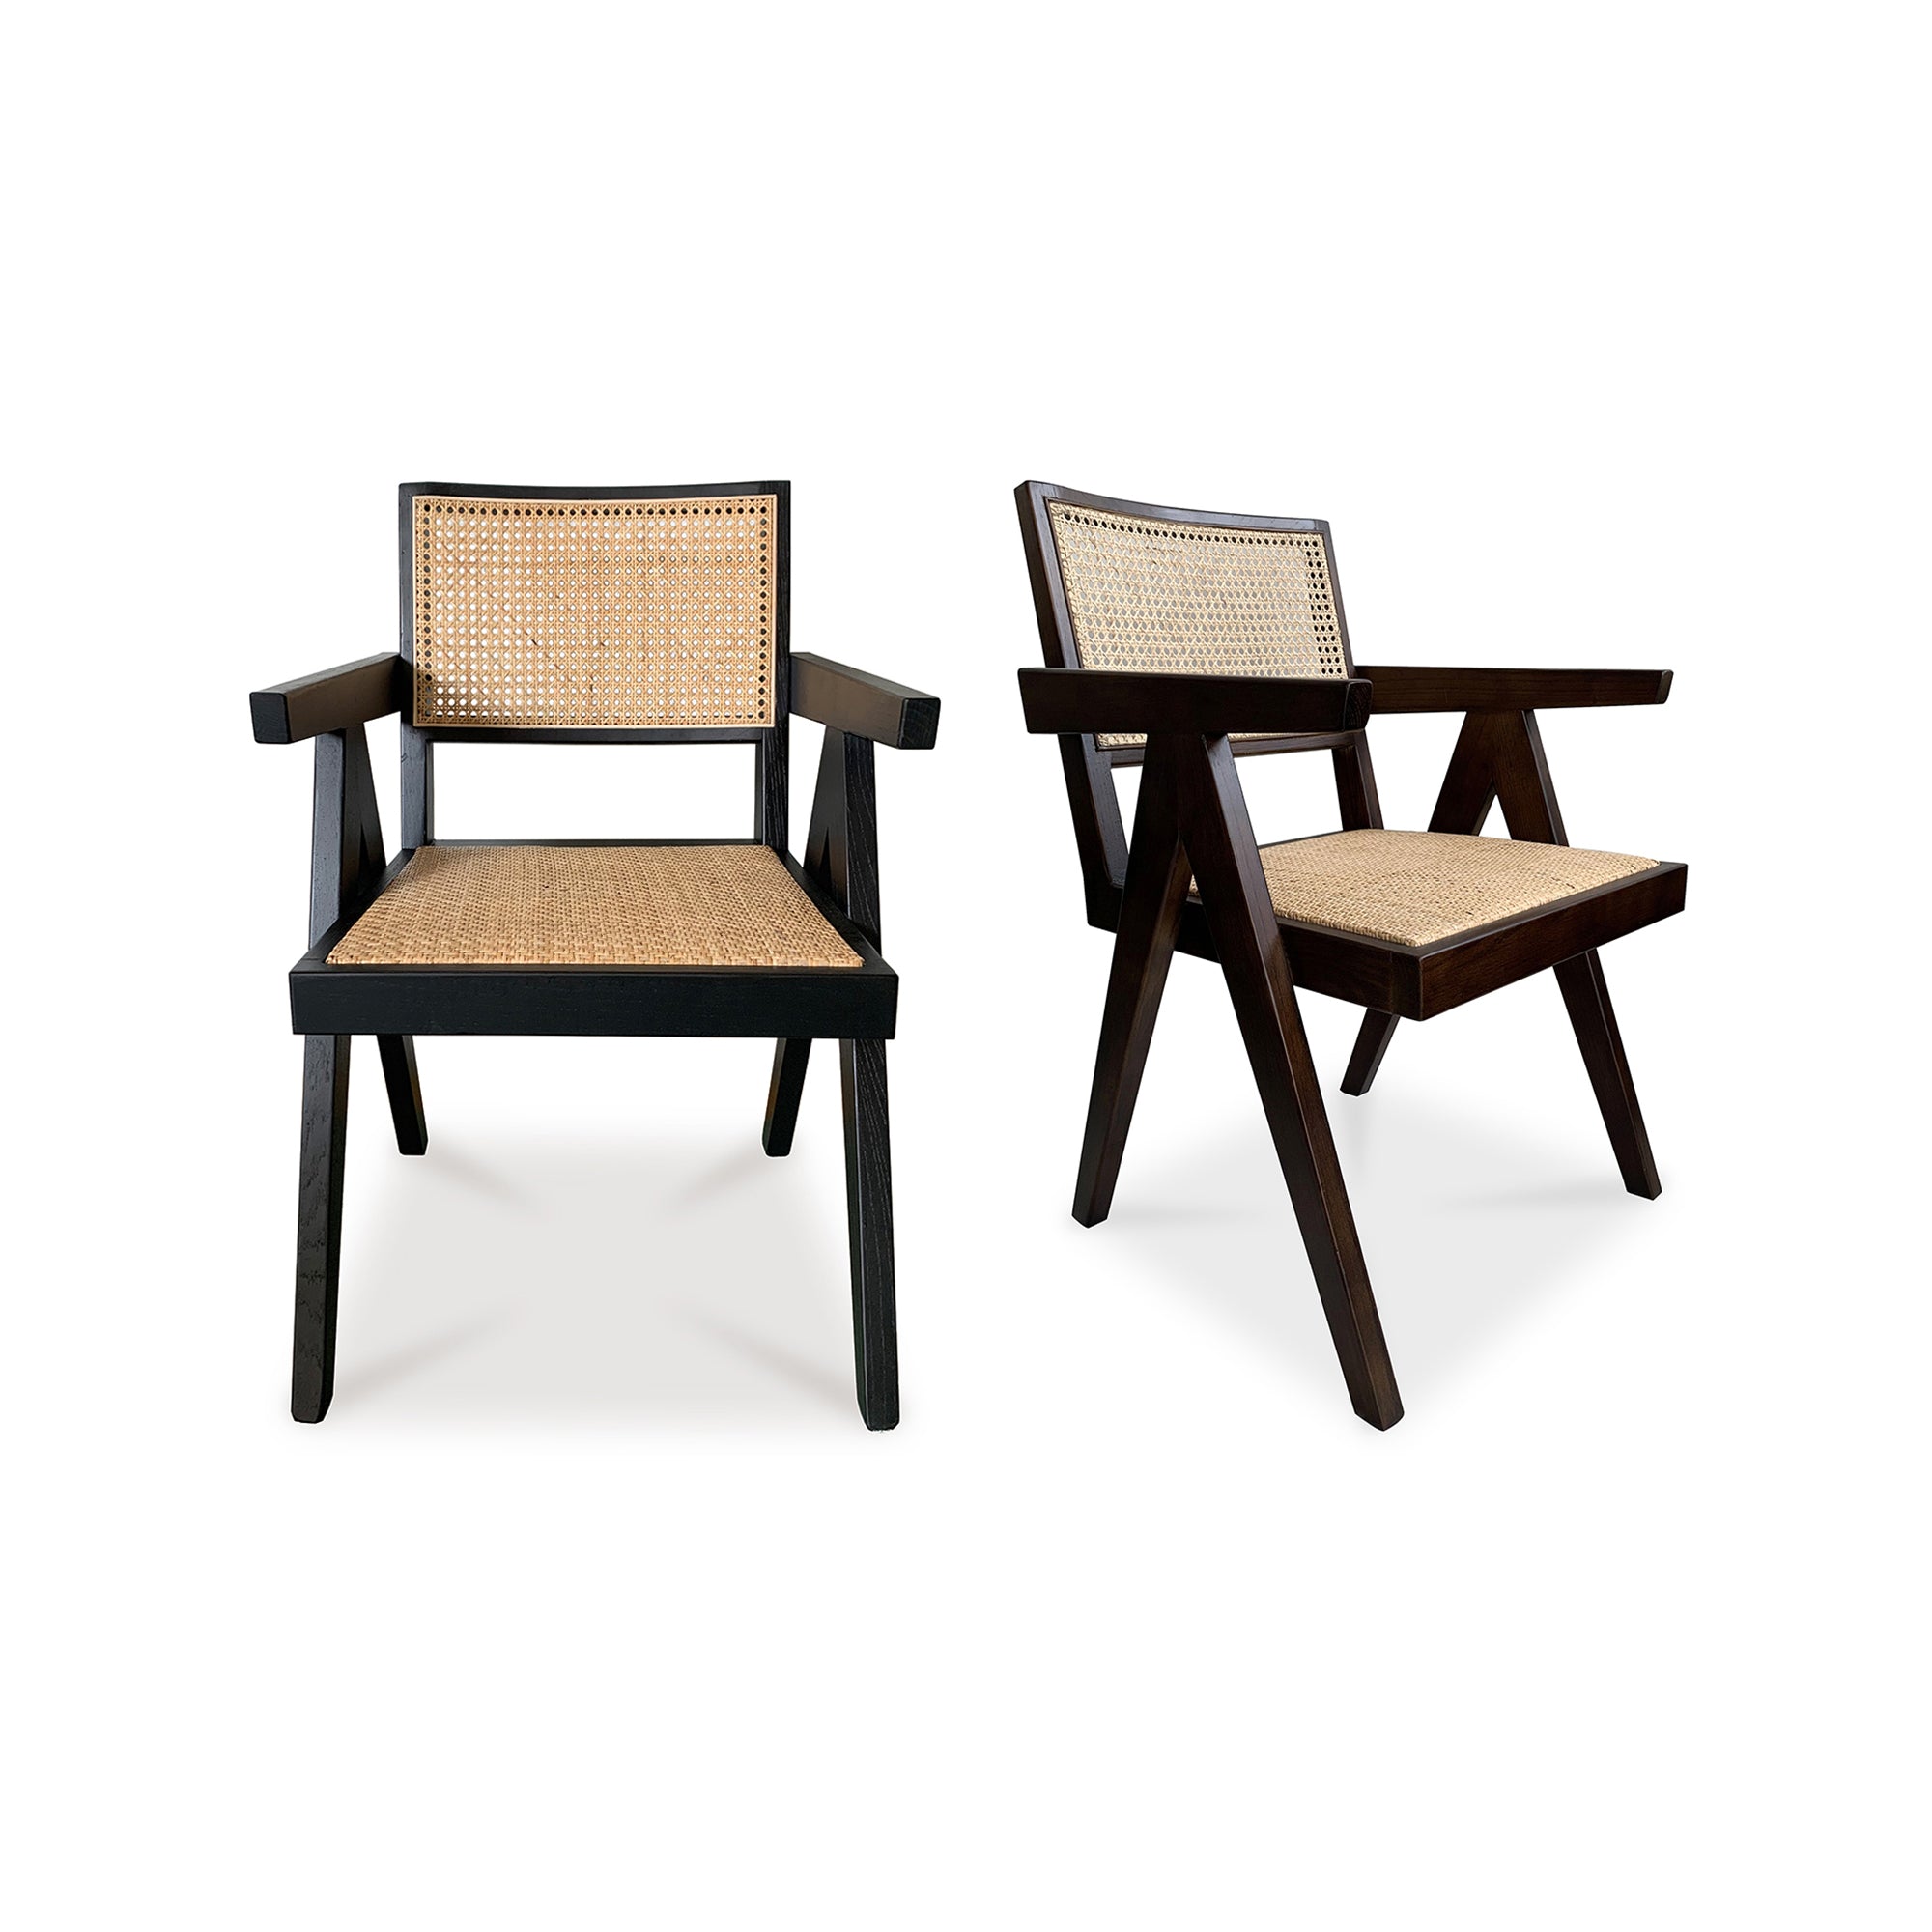 Takashi Chair Dark Brown - Set Of Two